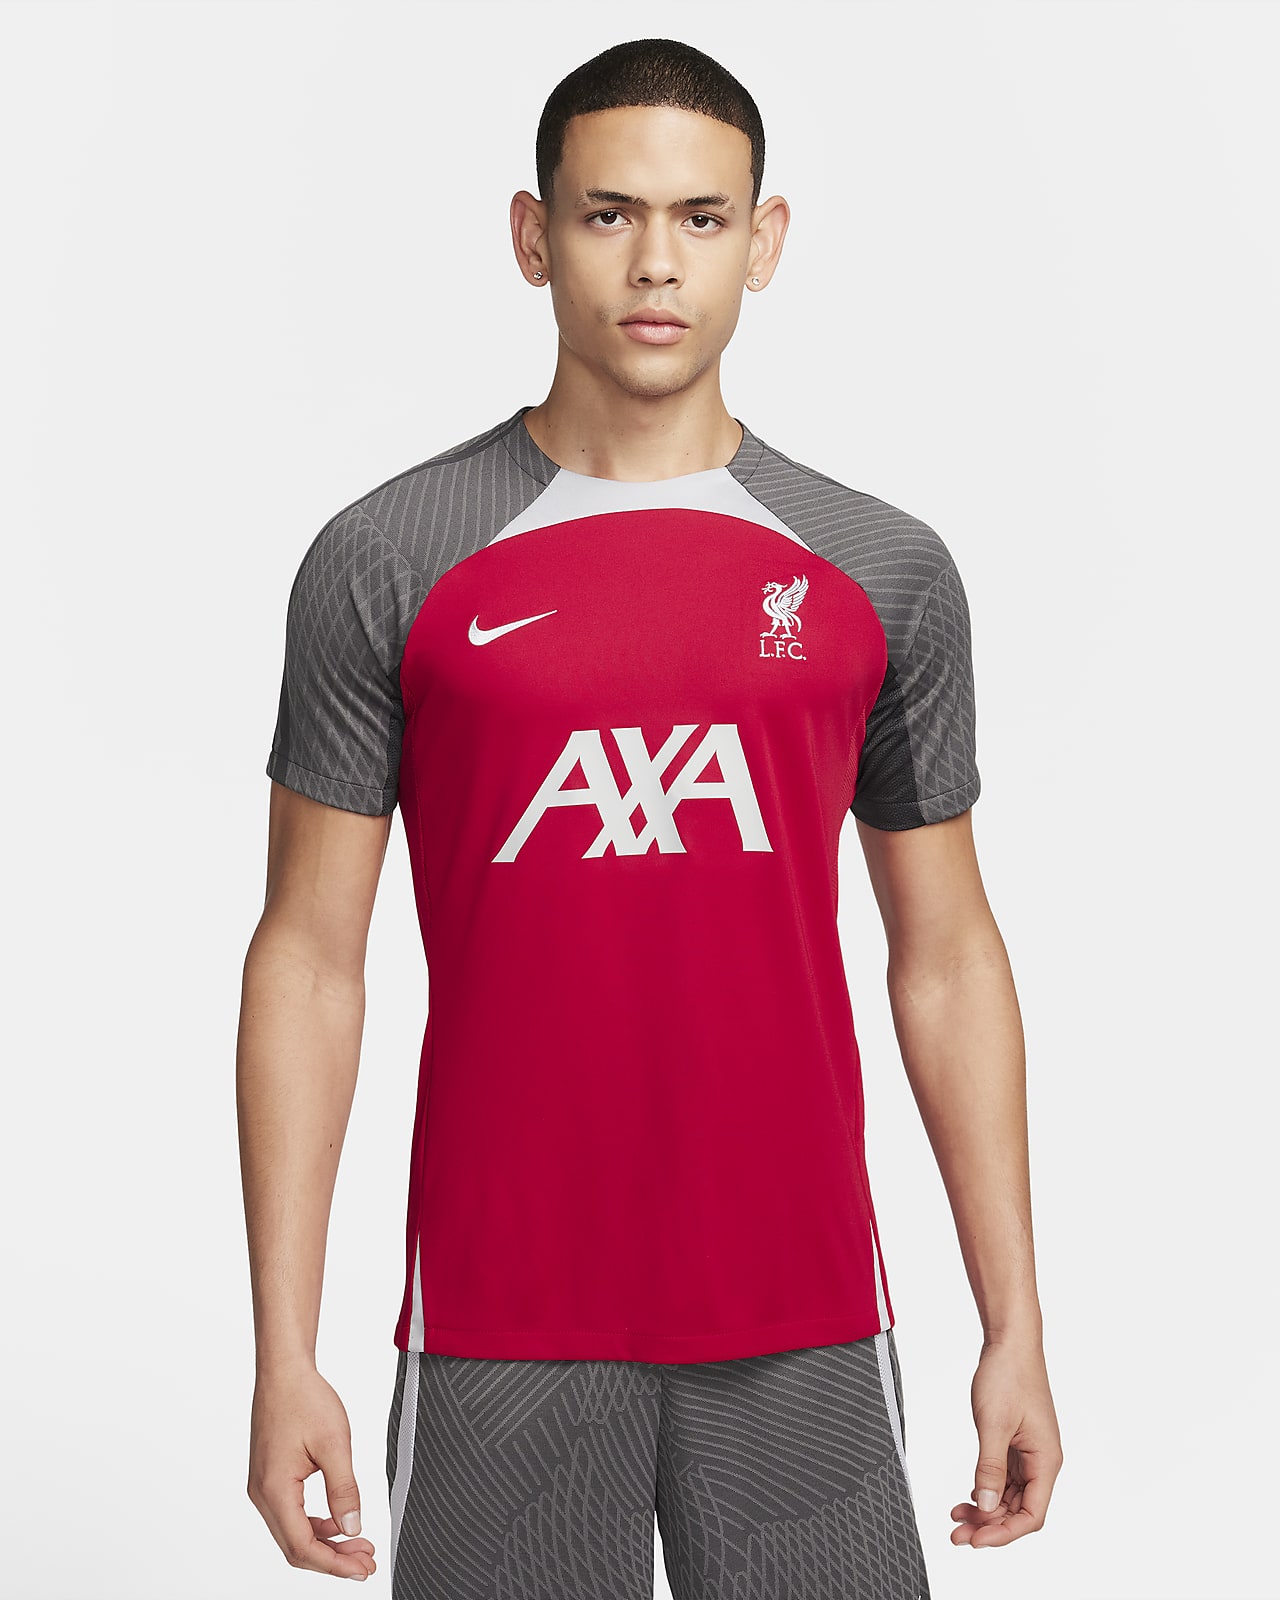 Liverpool F.C. Strike Men's Nike Dri-FIT Football Knit Top